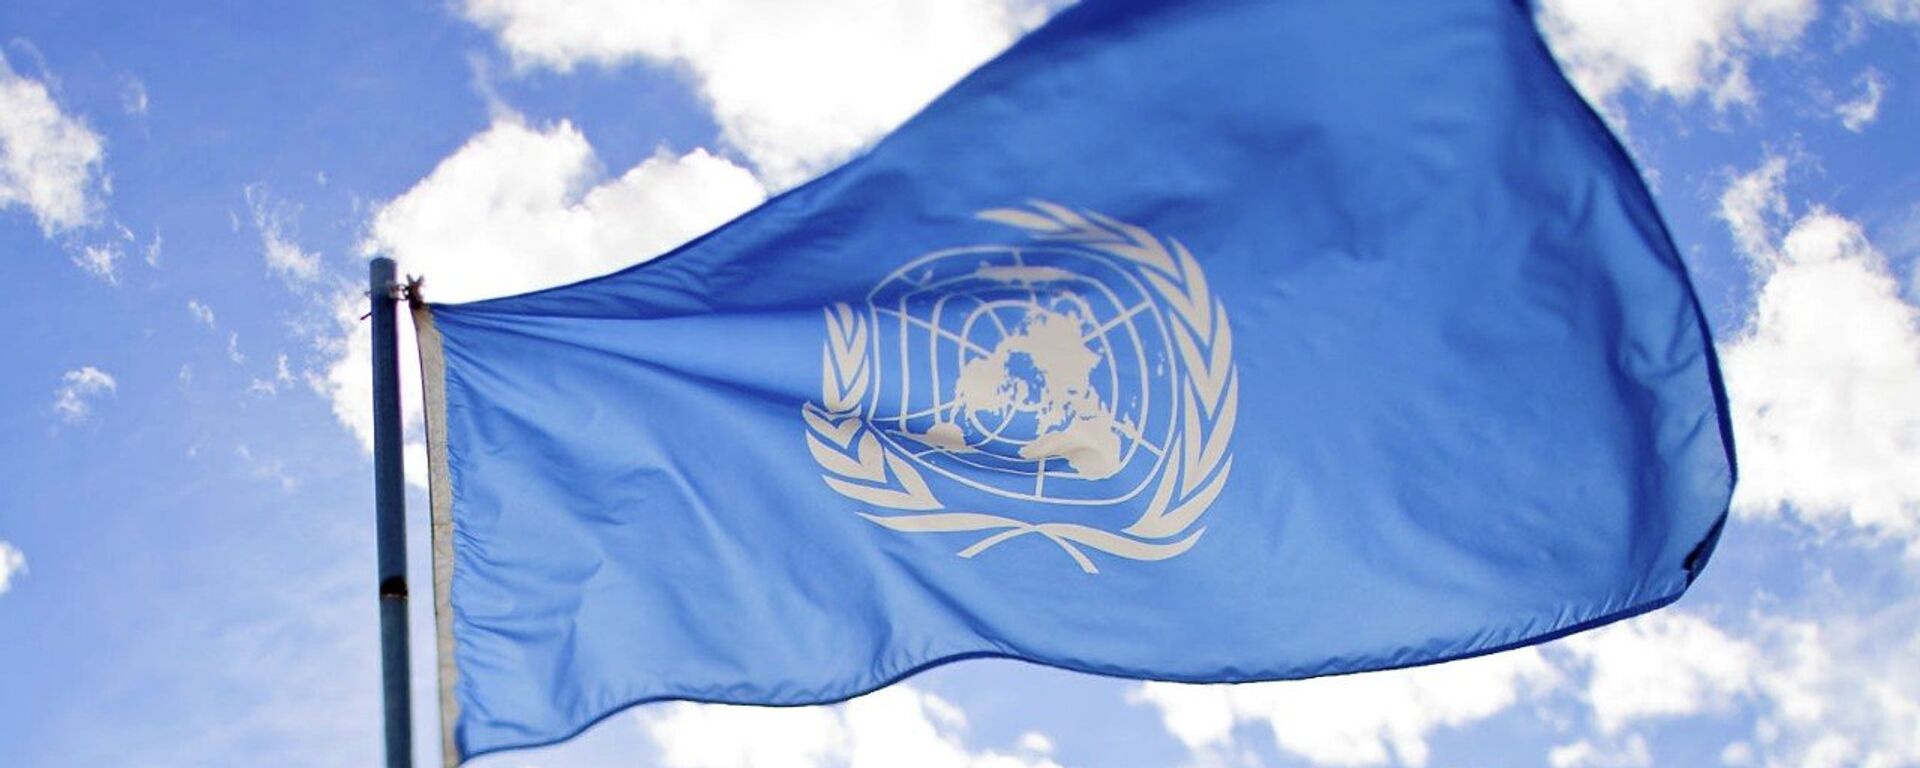 La bandera de la ONU - Sputnik Mundo, 1920, 17.06.2021